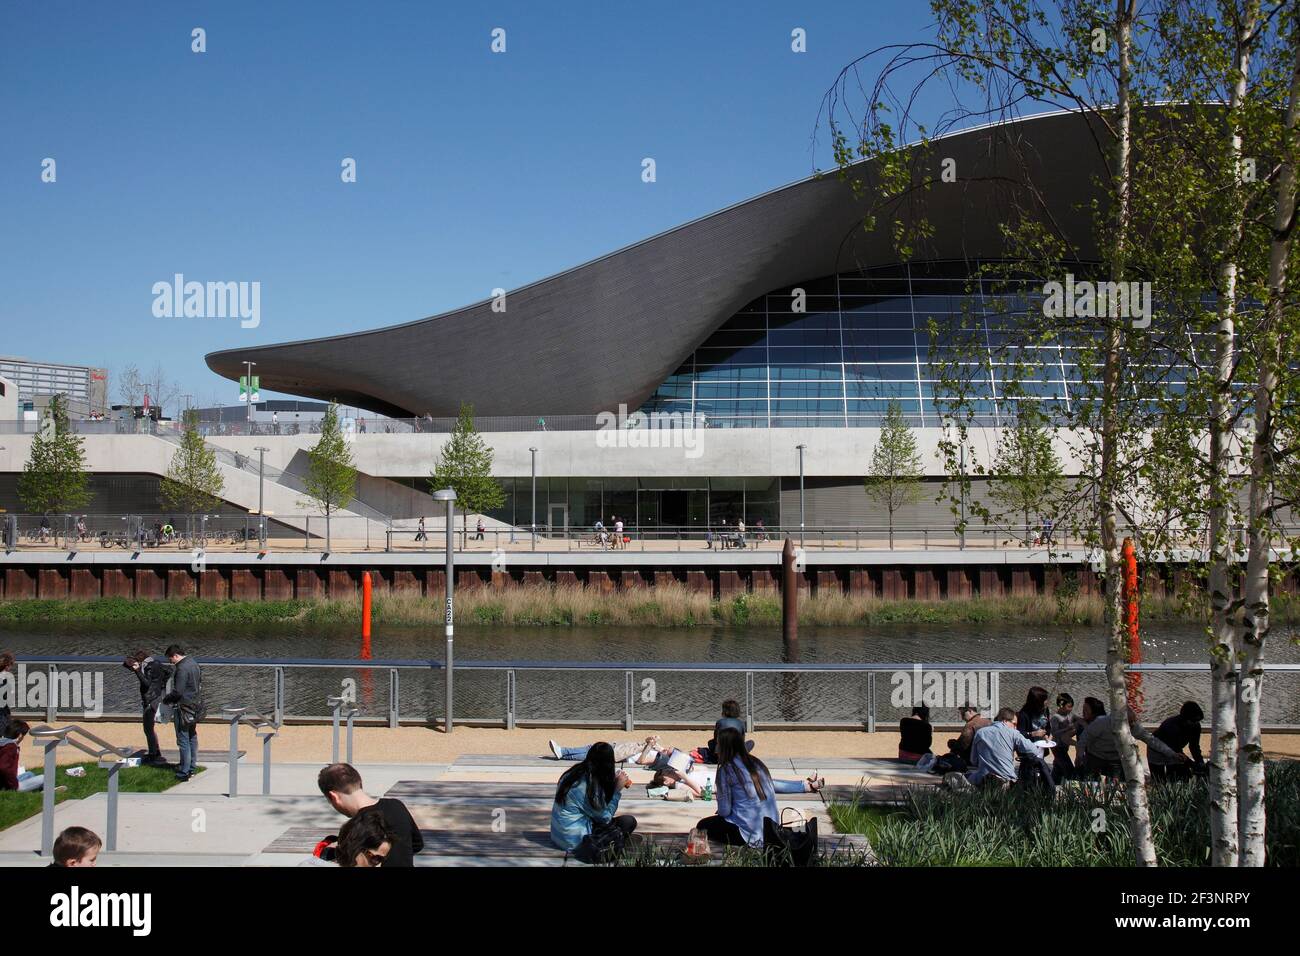 The aquatic centre form across the river | Architect: Zaha Hadid | Stock Photo